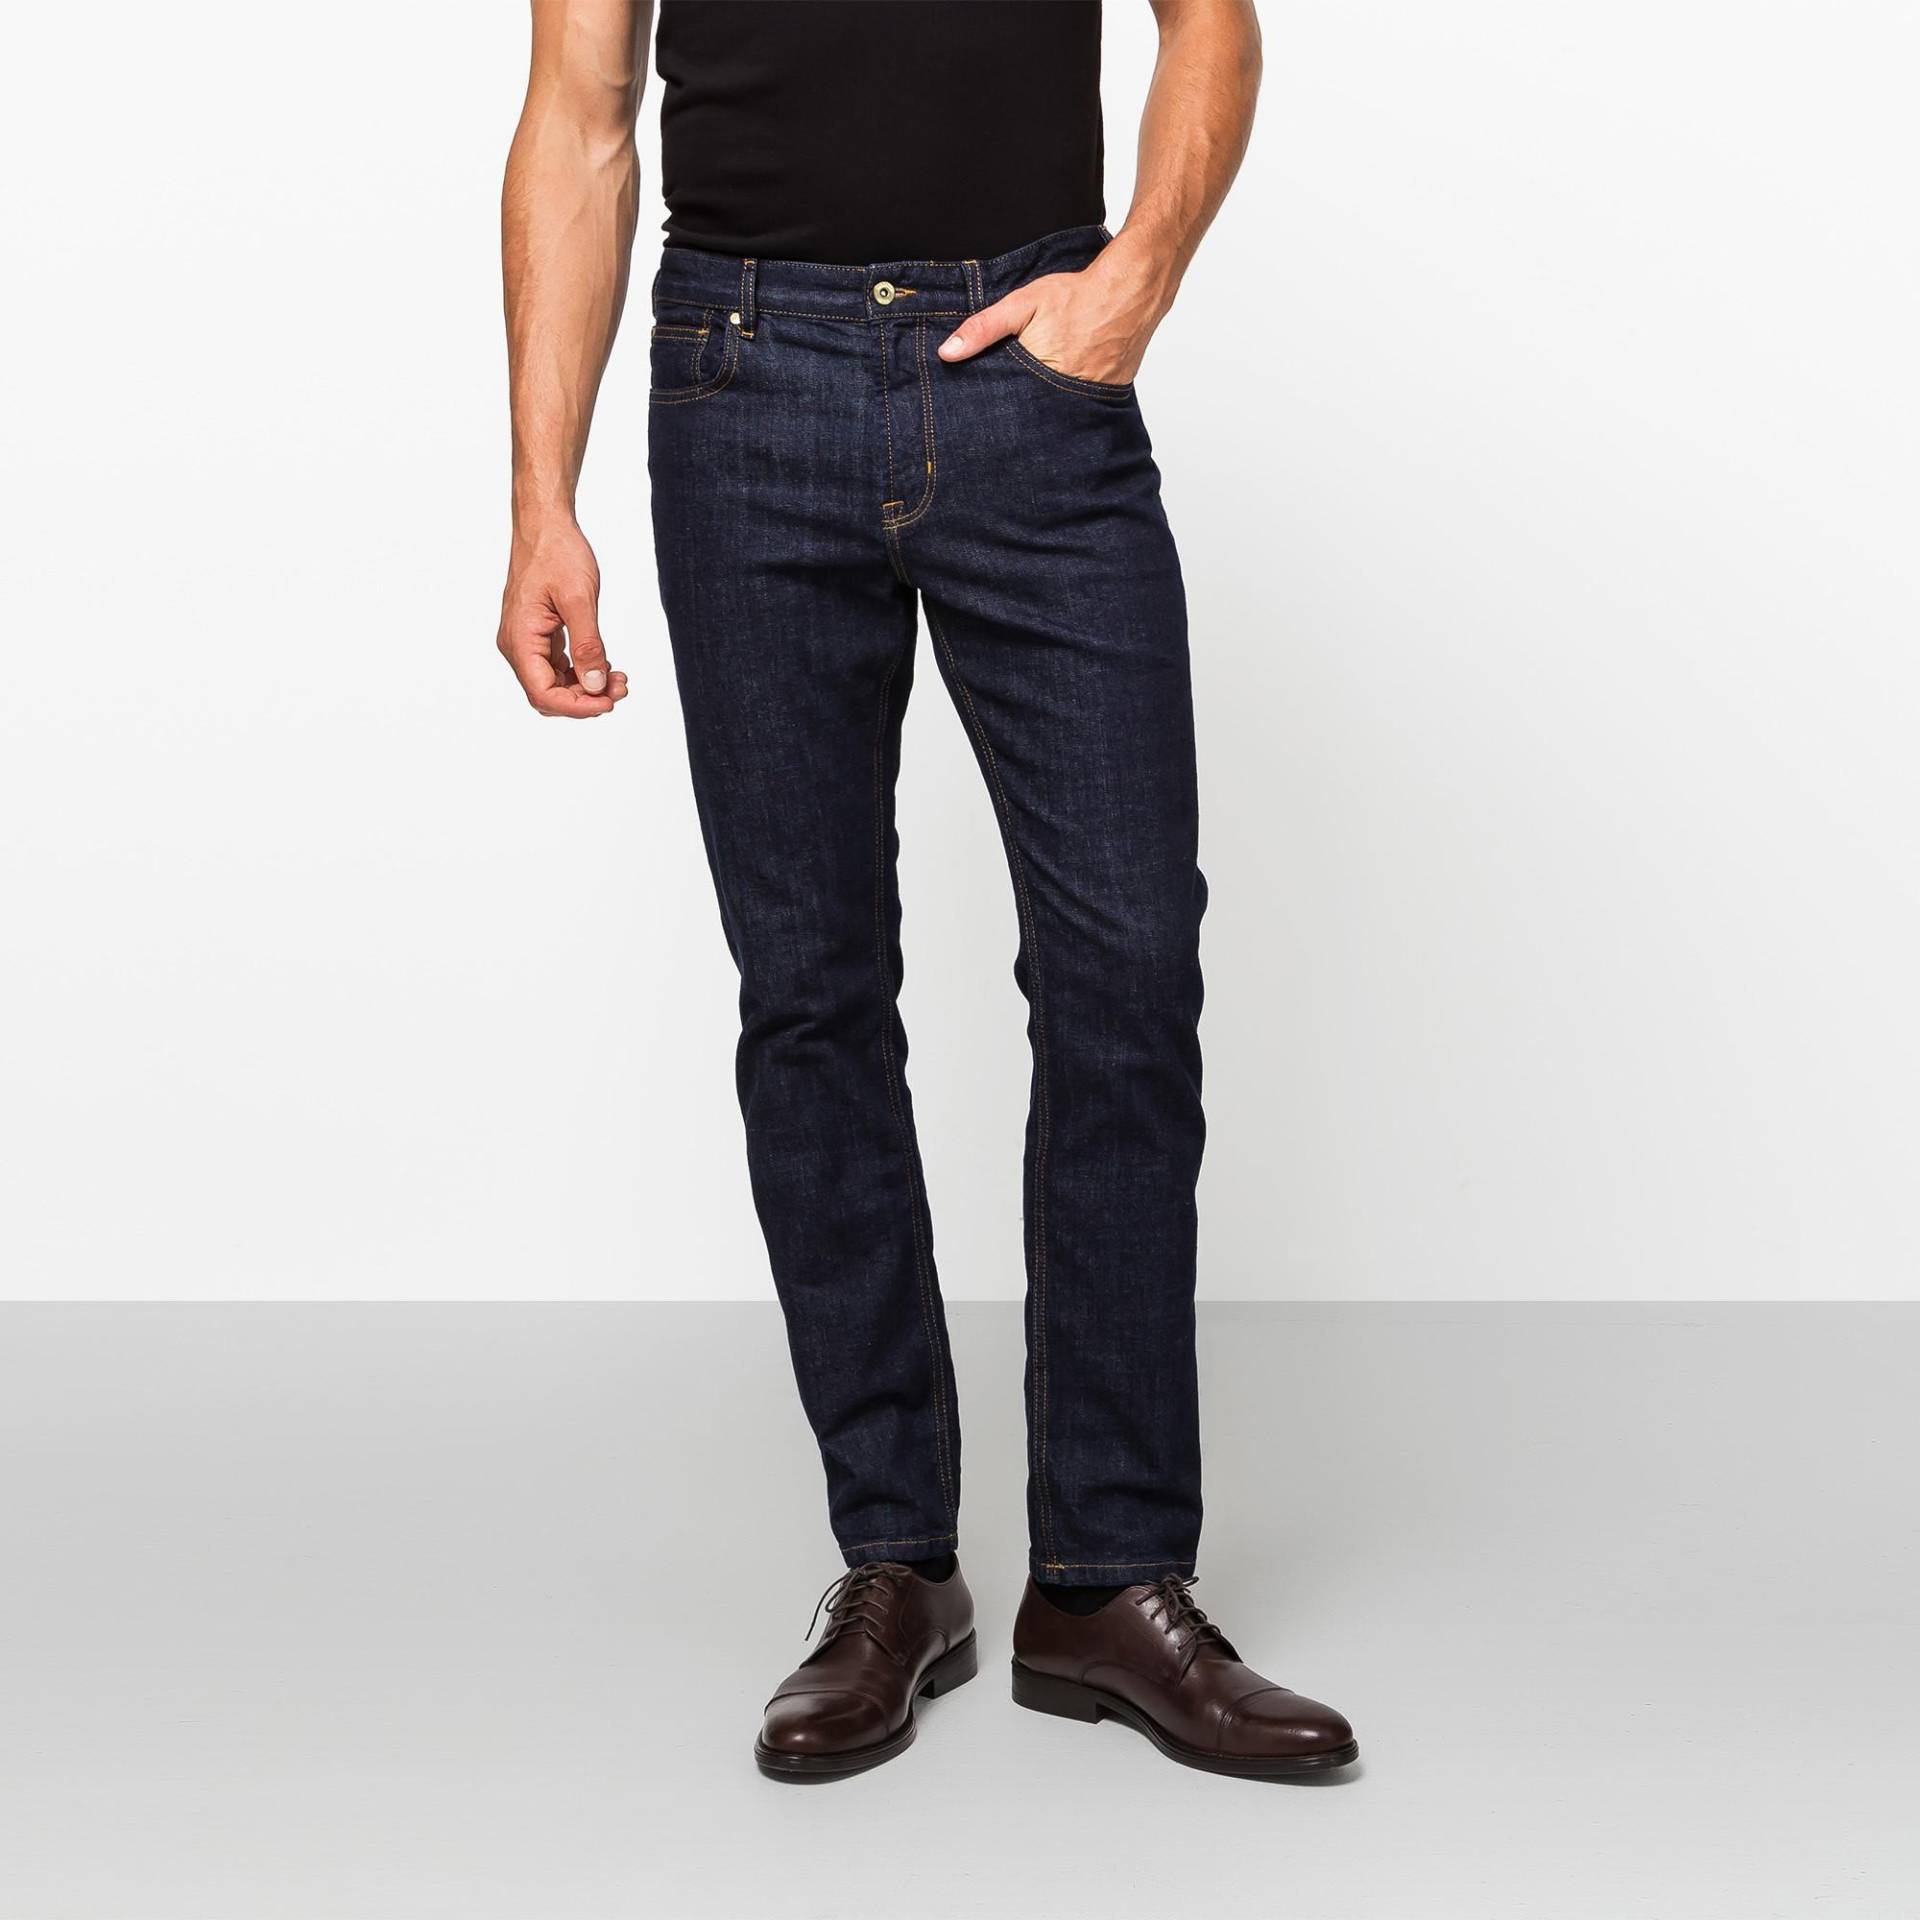 Jeans, Slim Fit Herren Blau Denim Dunkel L30/W32 von Manor Man